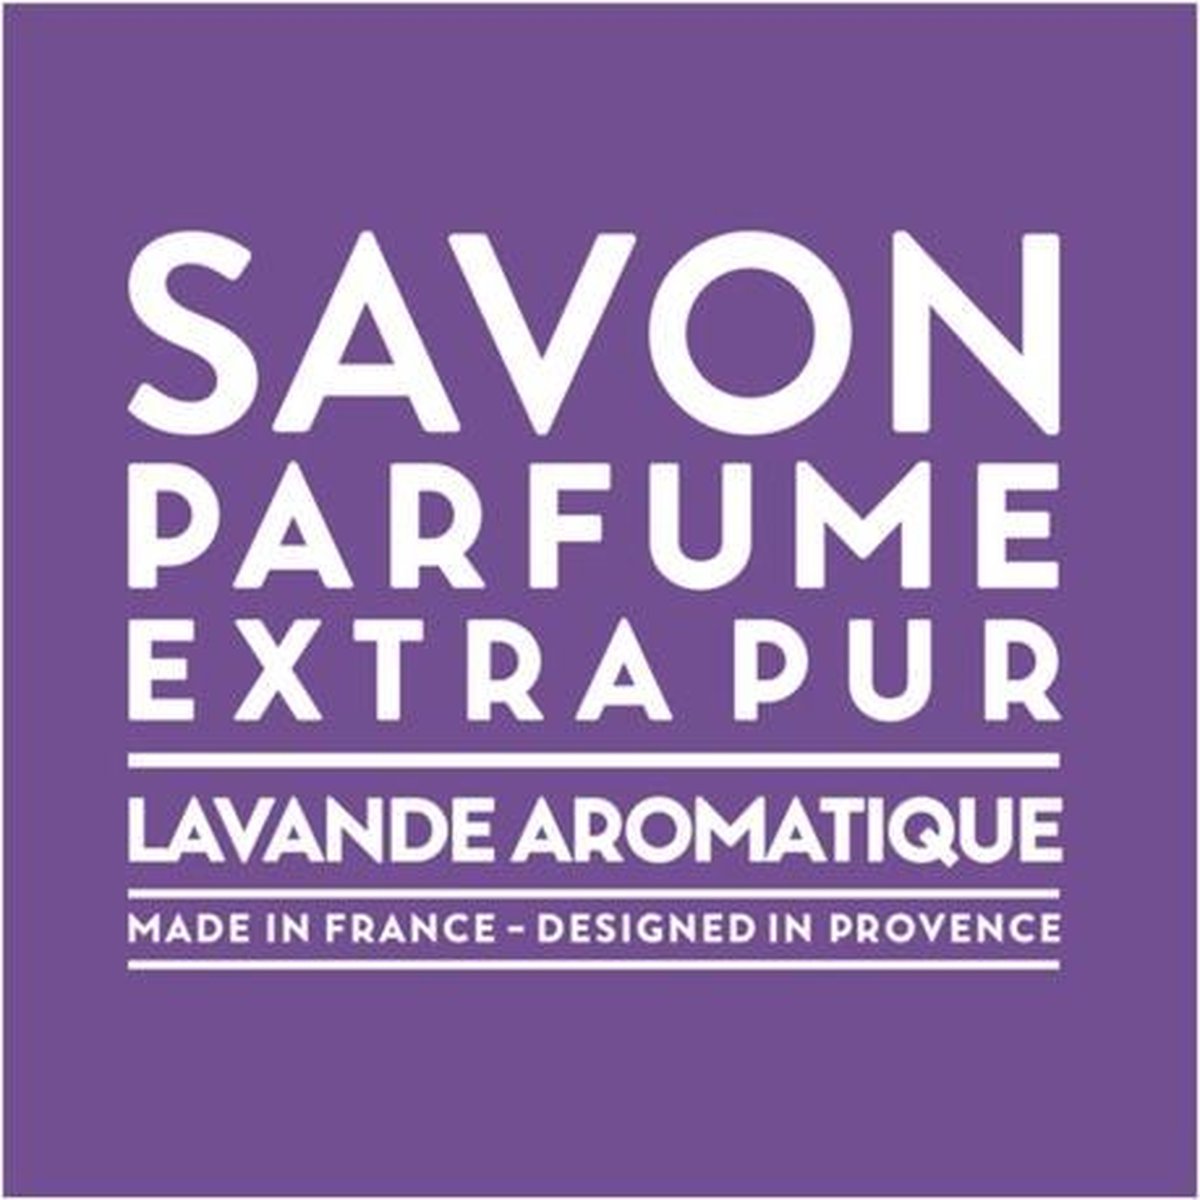 Compagnie de Provence Zeep Lavande Aromatique Savon Parfume Extra Pur